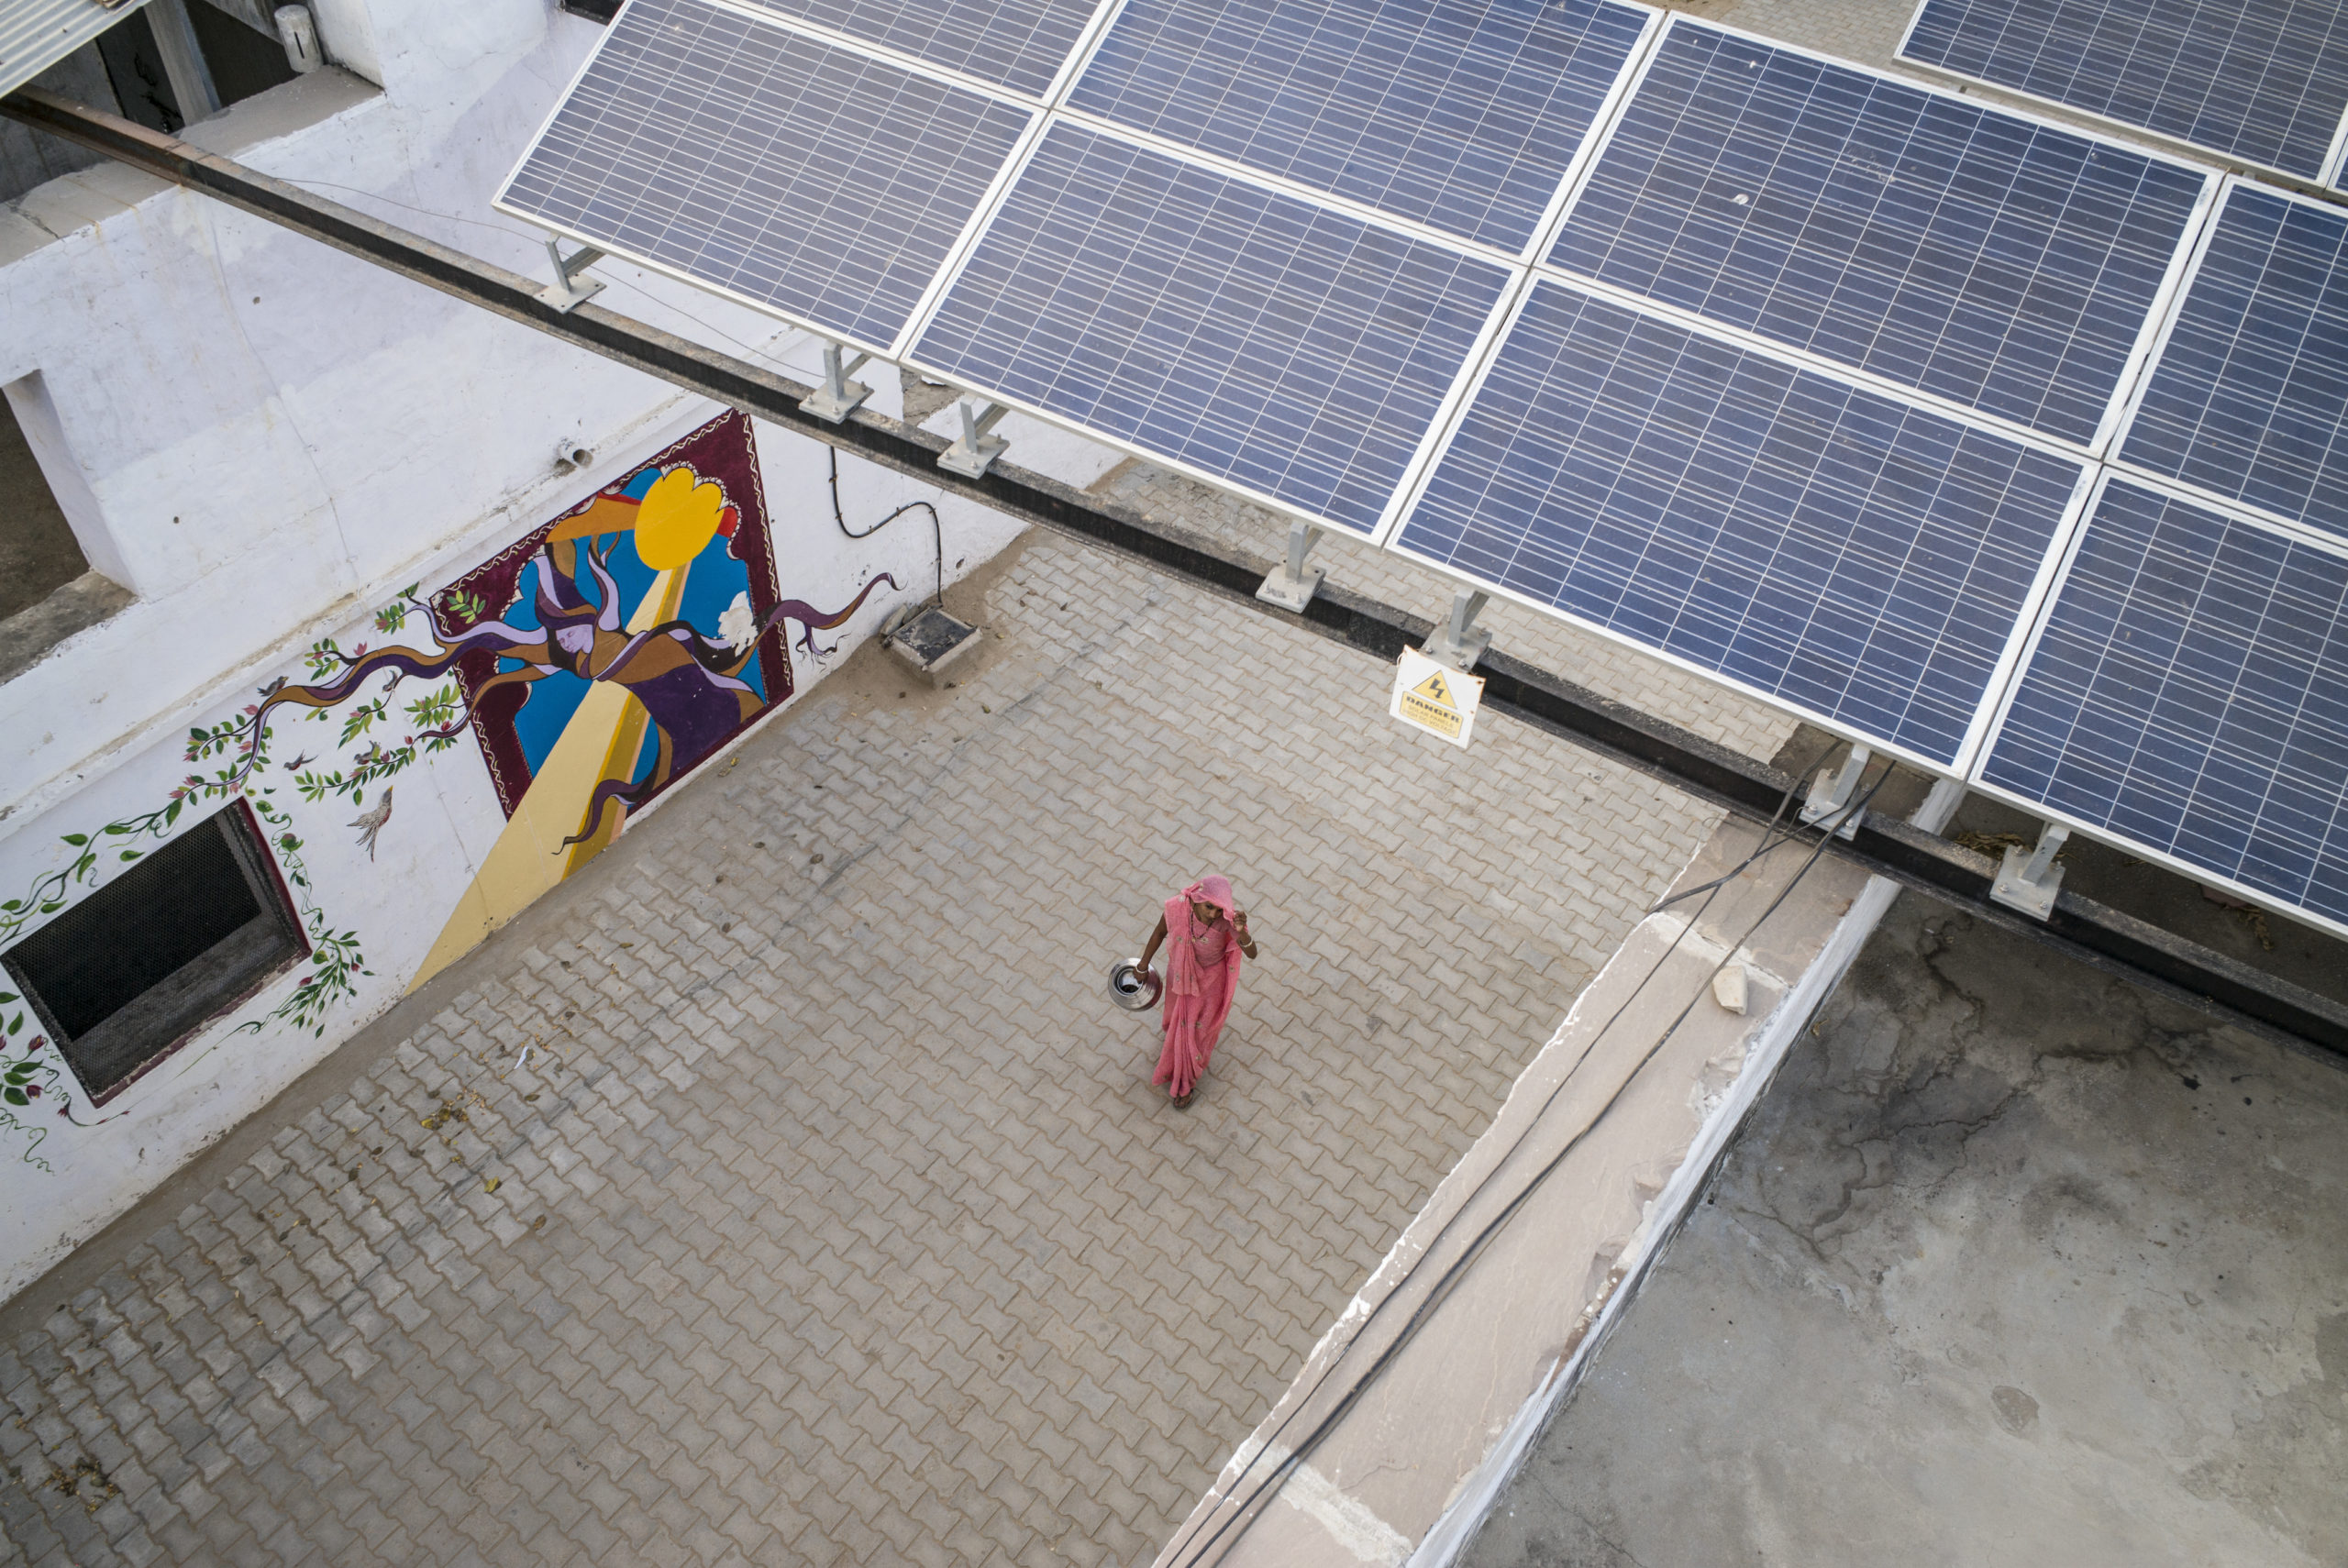 Jede ausgebildete Frau ist in der Folge für mindestens fünf Jahre für die Solaranlagen in ihrem Dorf verantwortlich. Foto: Florian Lang